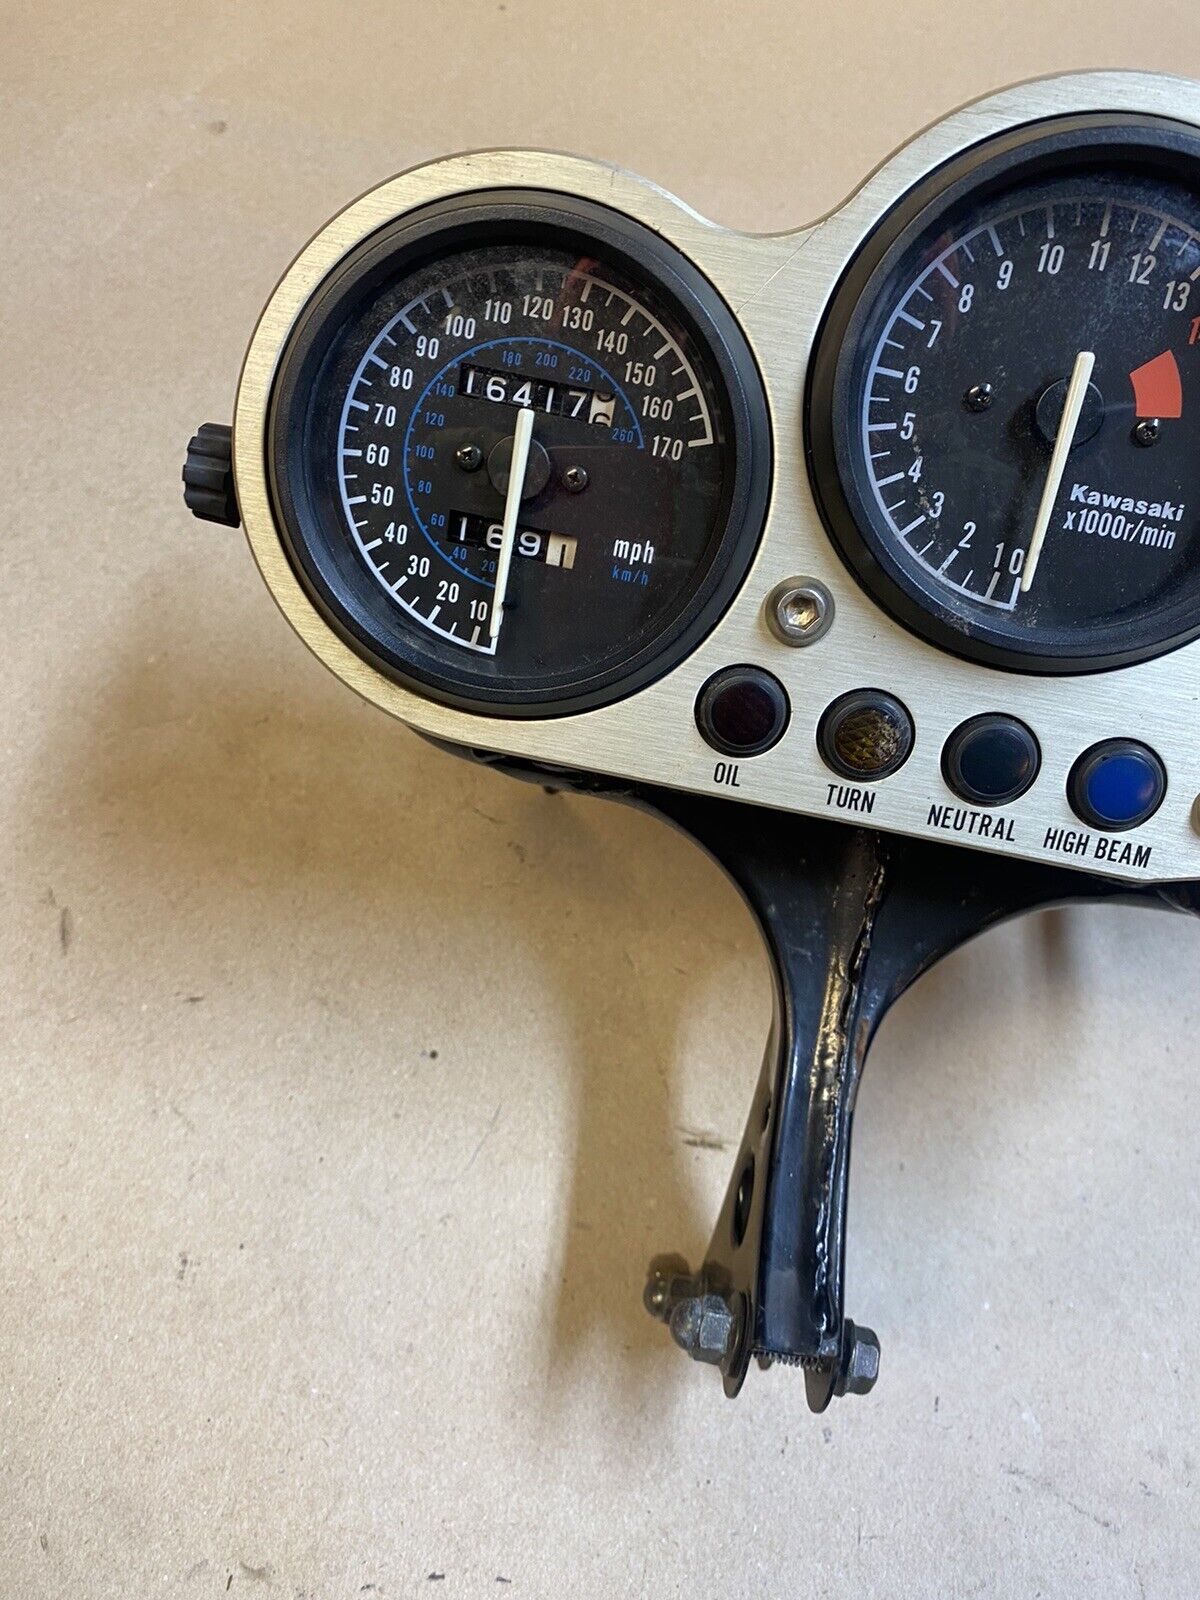 95-97 Kawasaki Ninja ZX6R Gauges Speedo Tach Cluster Speedometer Mount OEM  #0121